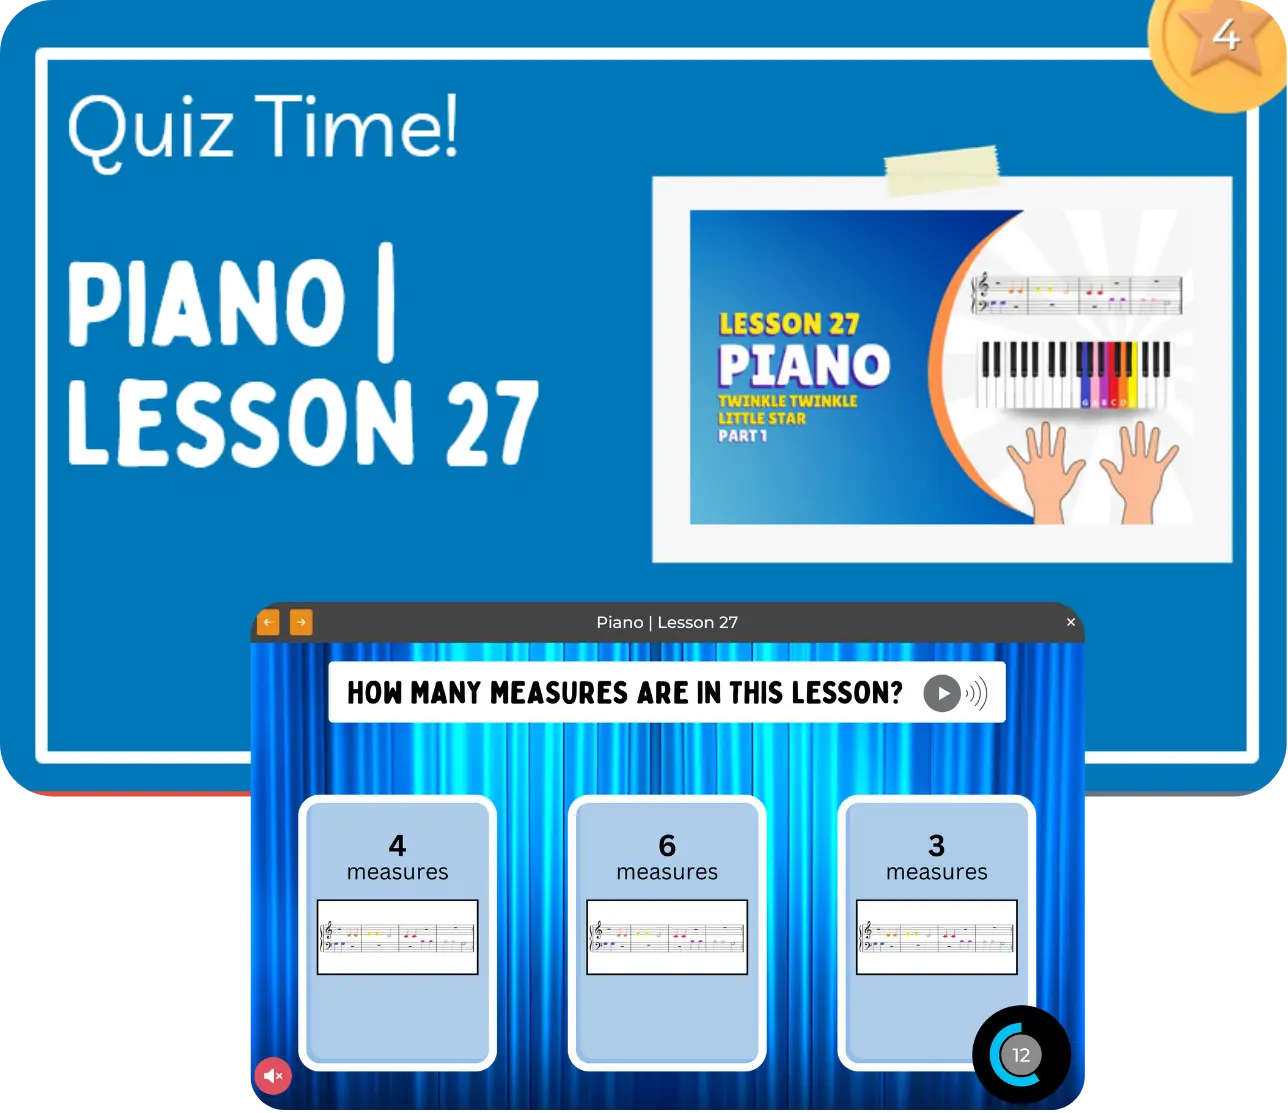 Piano lesson cover